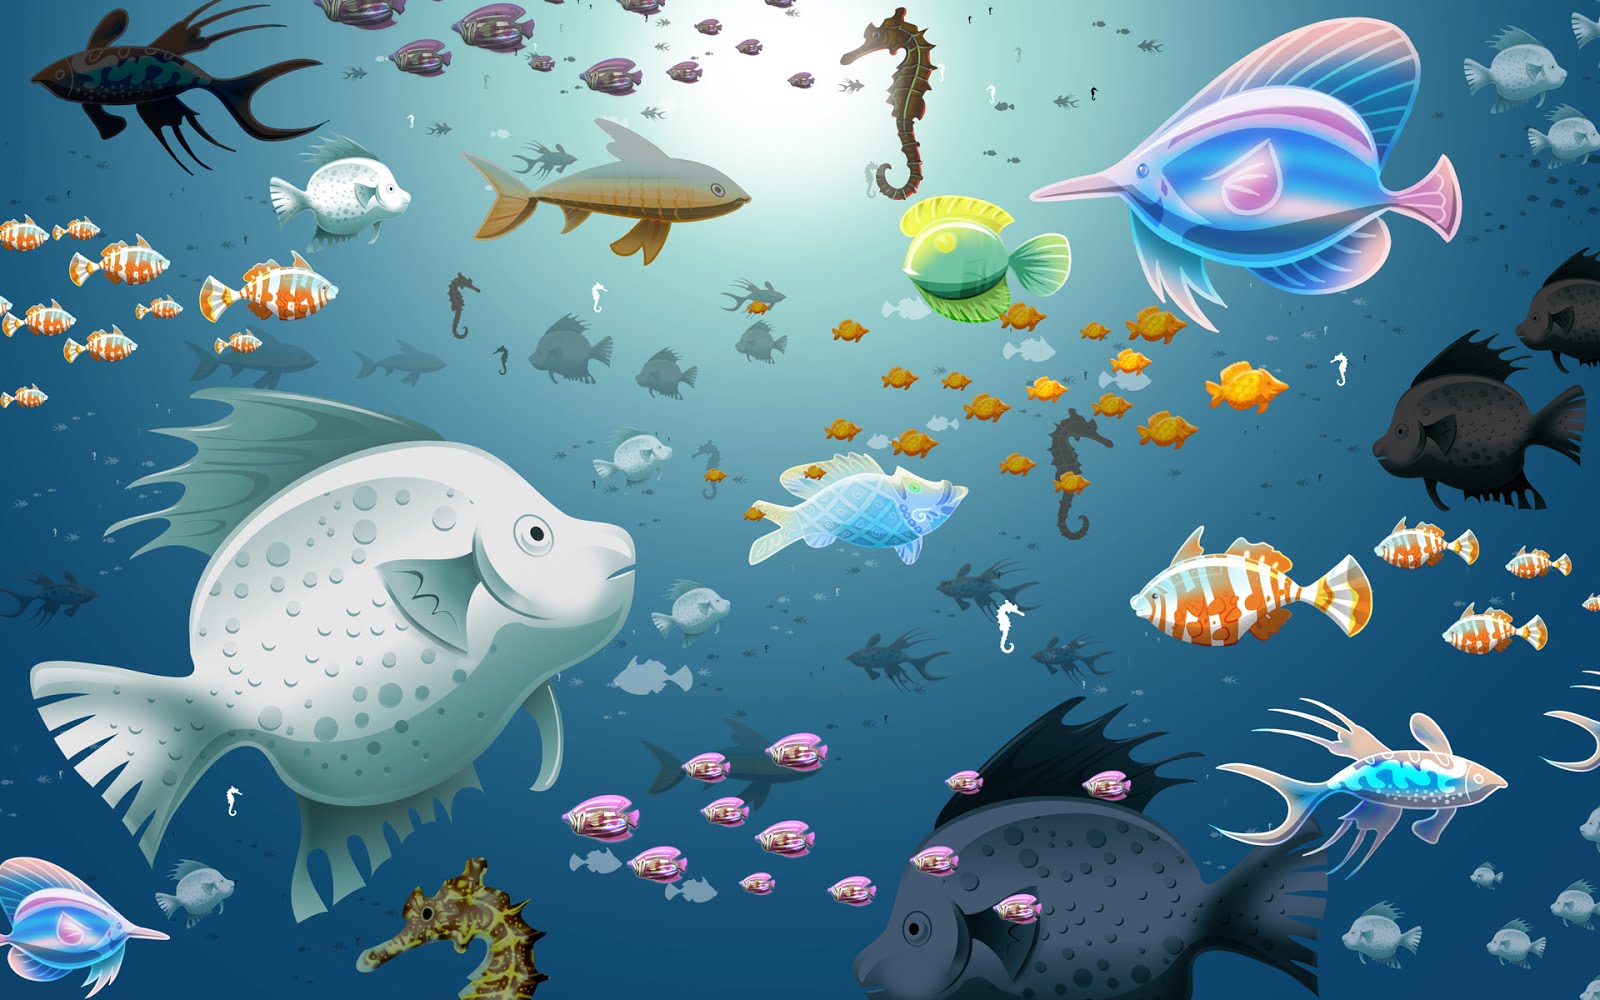 hd aquarium animated wallpaper download hq aquarium animated wallpaper